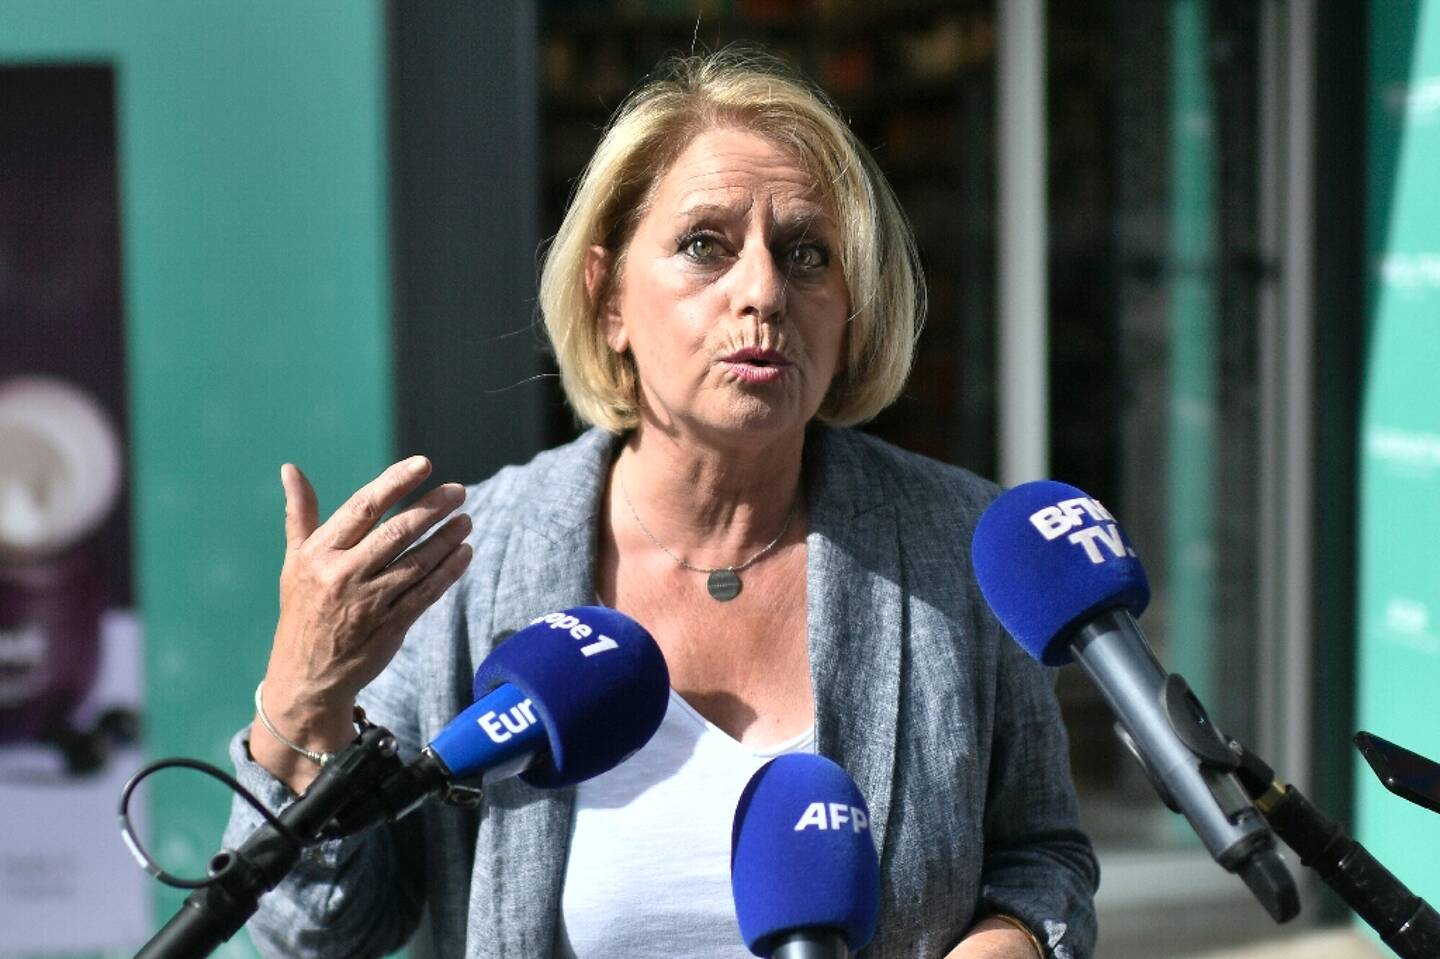 La ministre de la Santé Brigitte Bourguignon s'exprime après avoir reçu une deuxième dose de rappel de vaccin anti-Covid, le 23 juin 2022 à Paris 